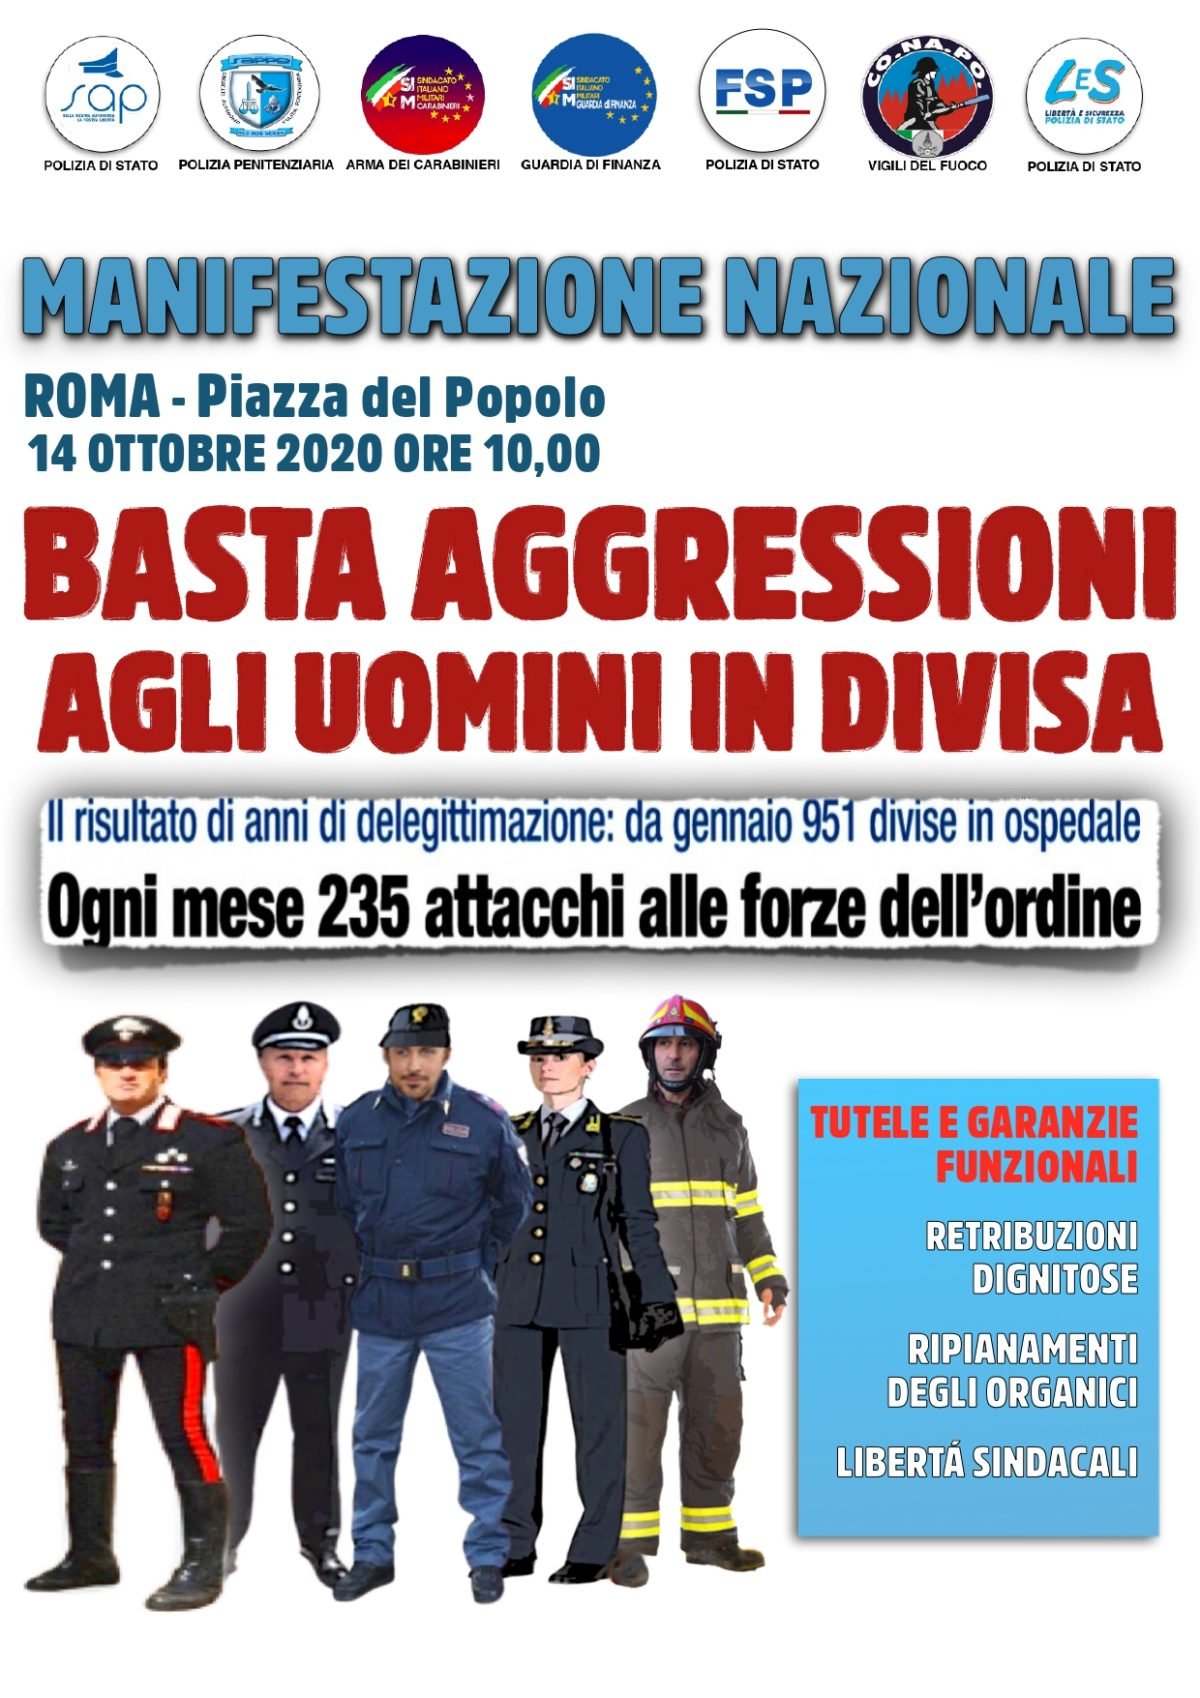 “Basta aggressione agli uomini in divisa”: anche il Sap di Alessandria in piazza a Roma